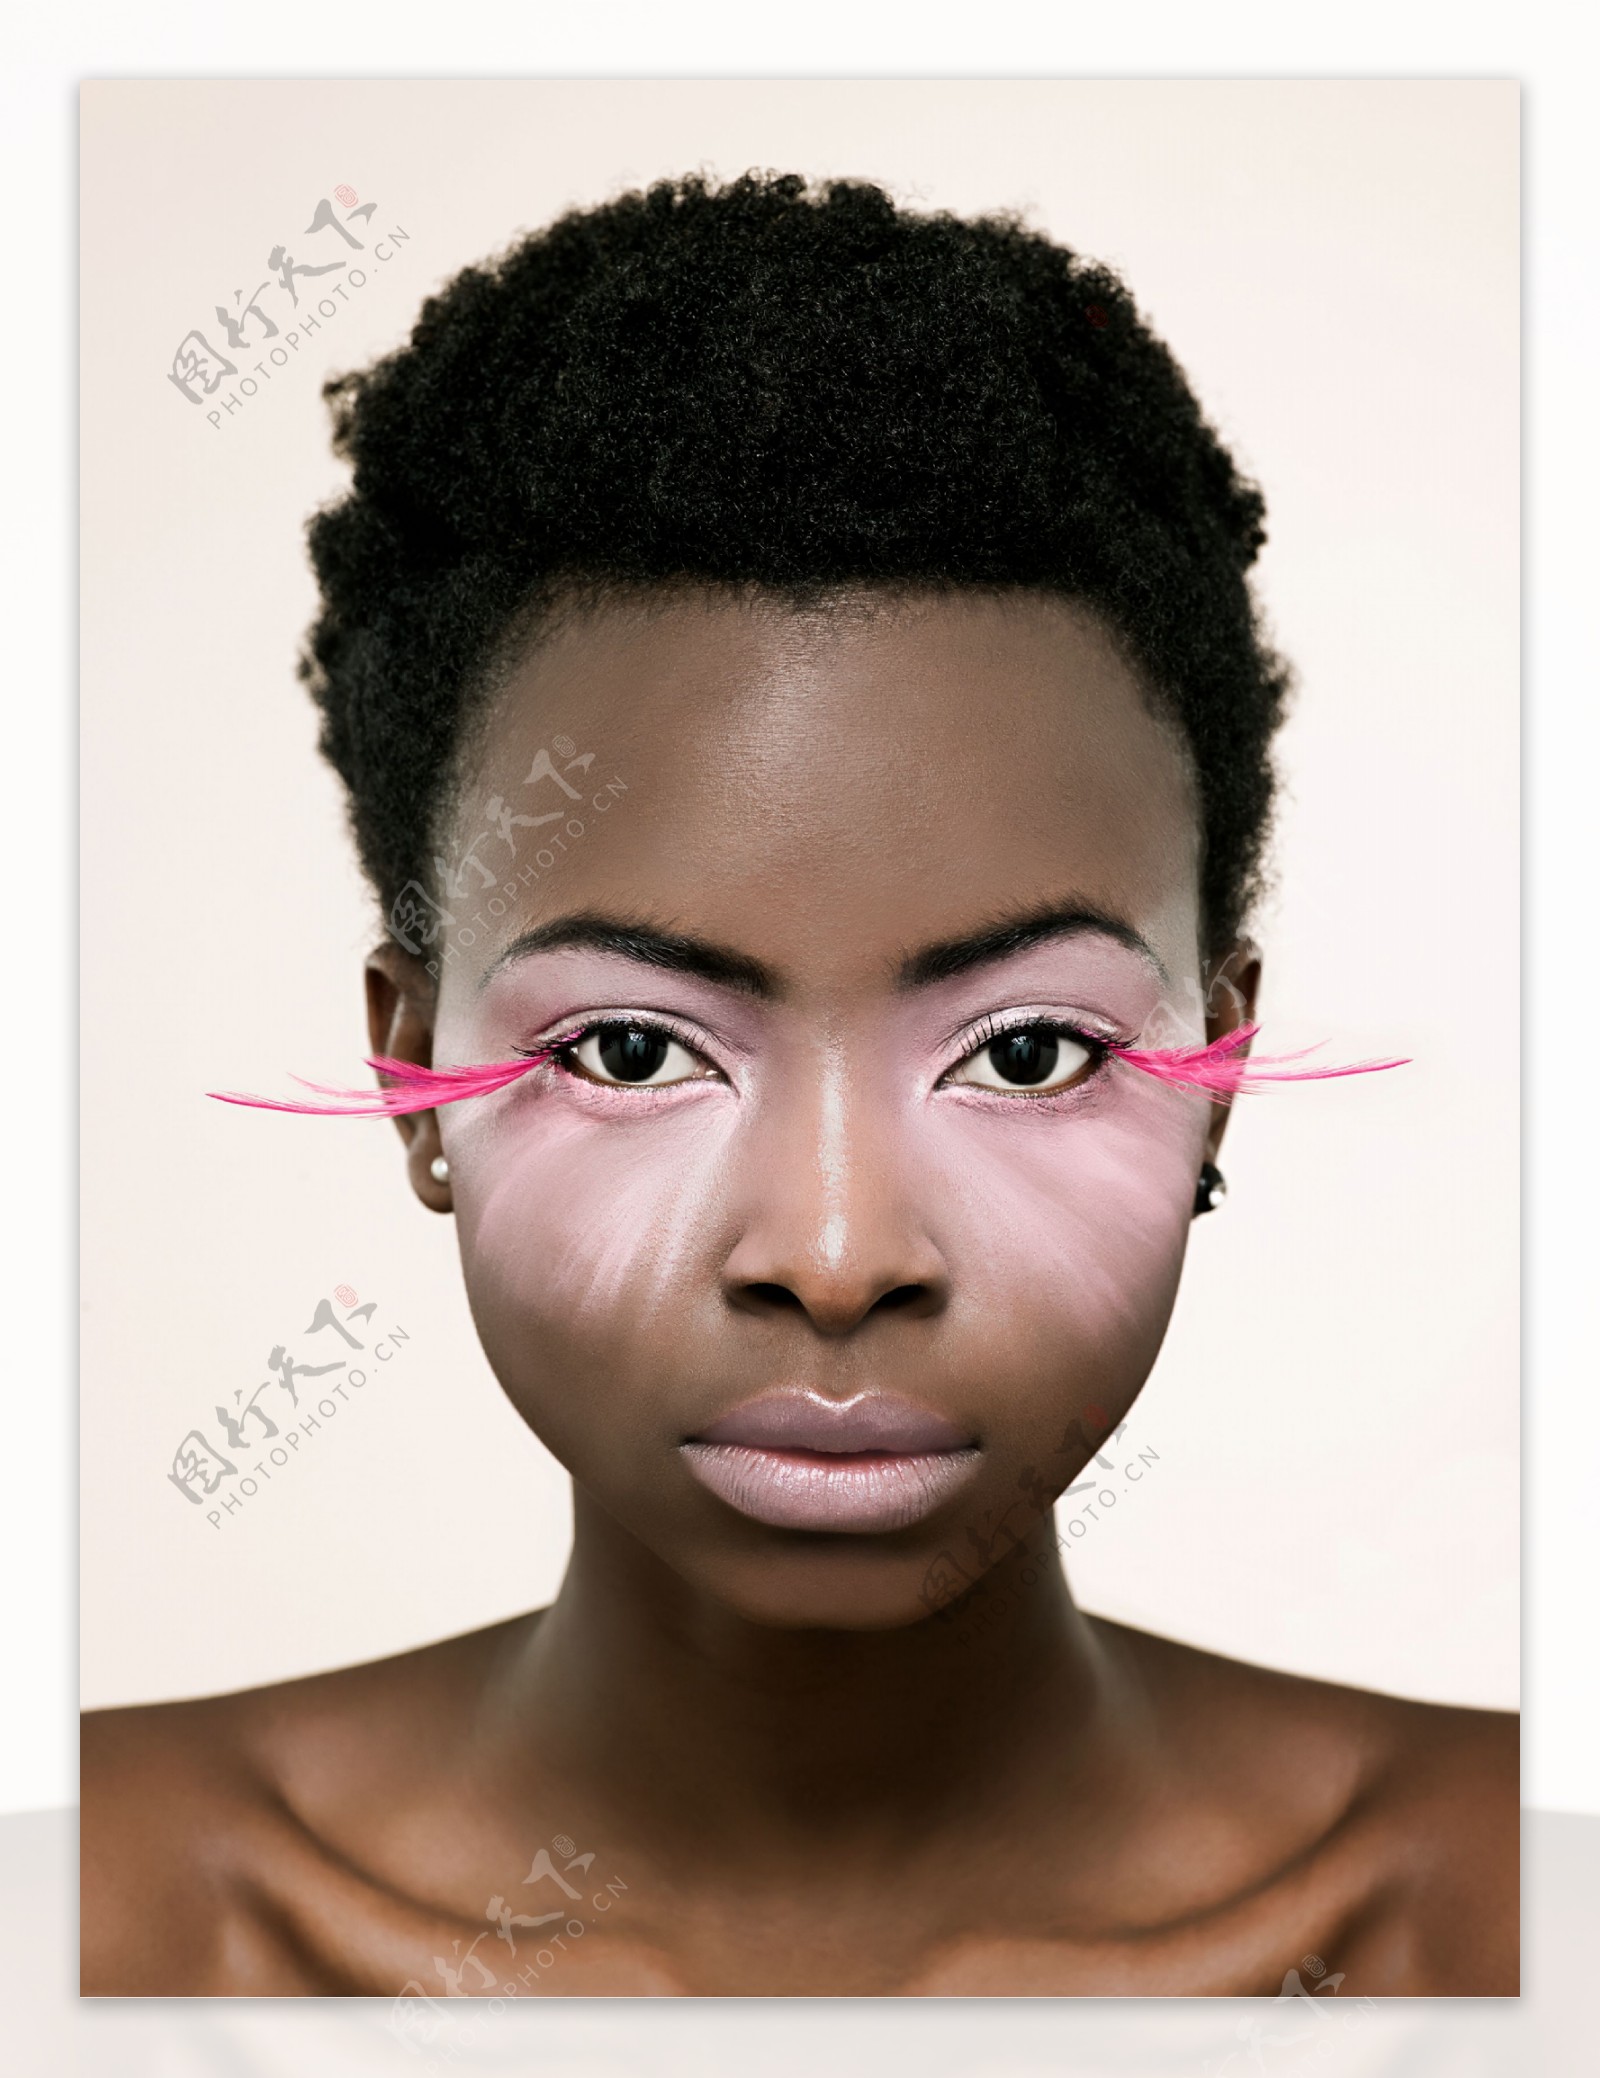 性感时尚爆炸头黑人美女写真人体摄影图片 - 站长素材